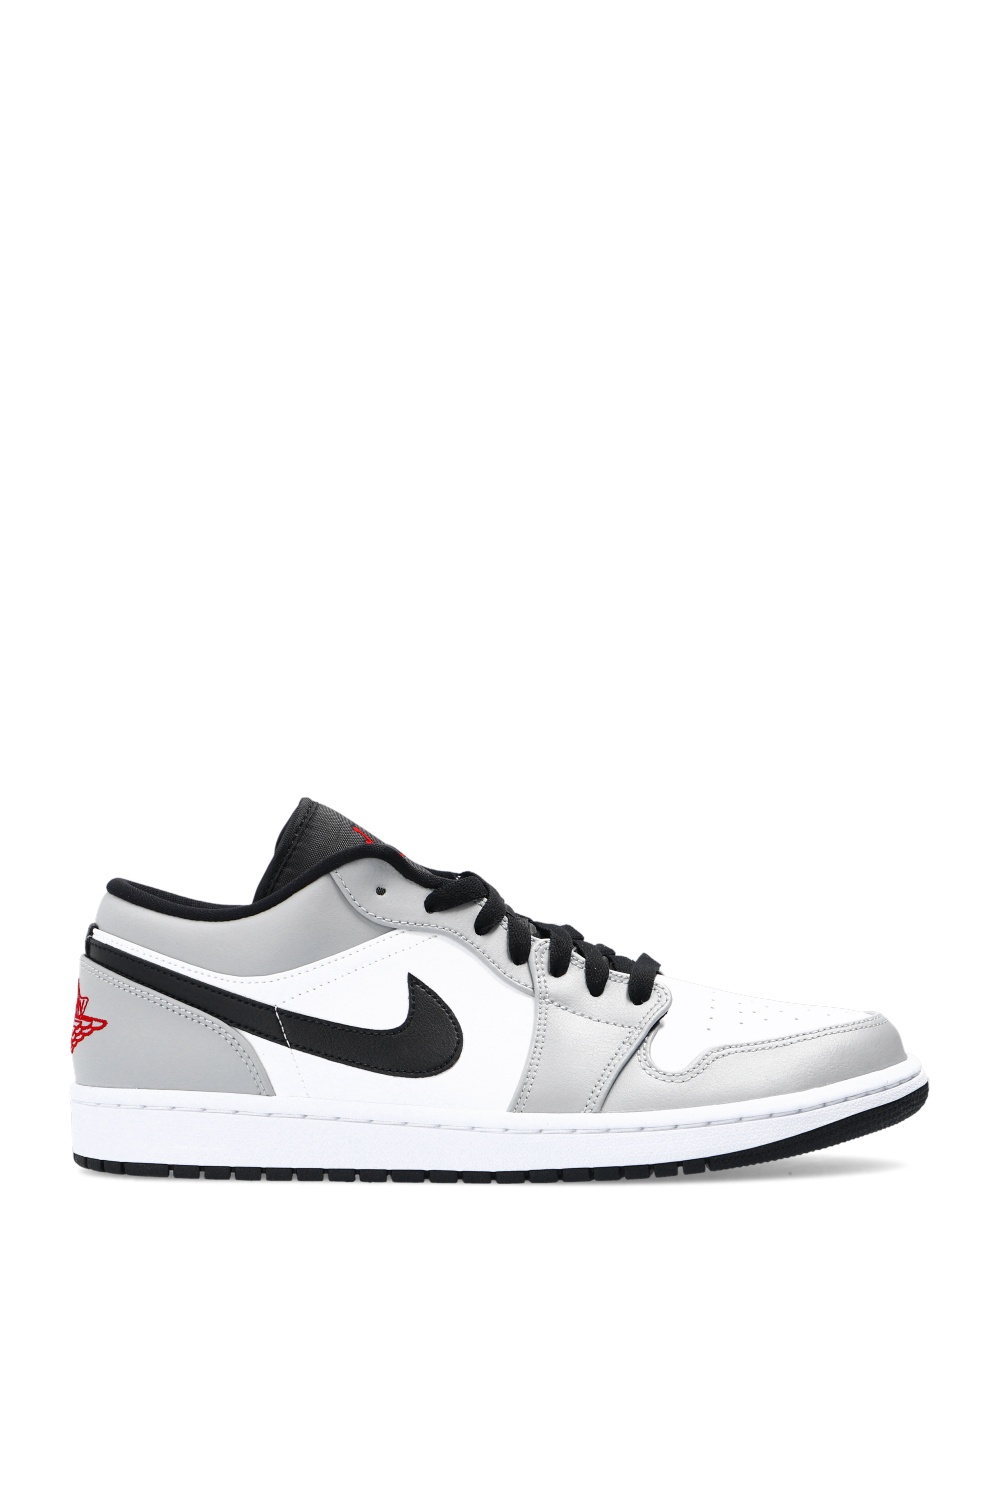 Air Jordan 1 Low' high-top sneakers Nike - Vitkac Australia